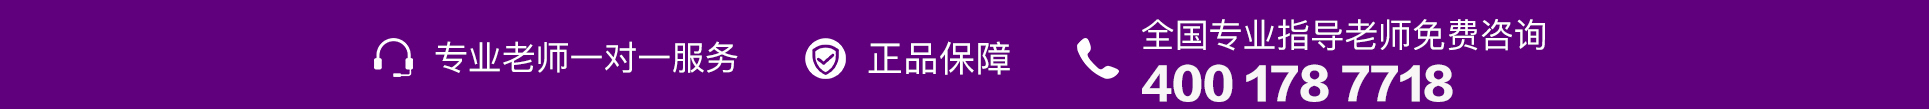 紫色电话-PC.jpg